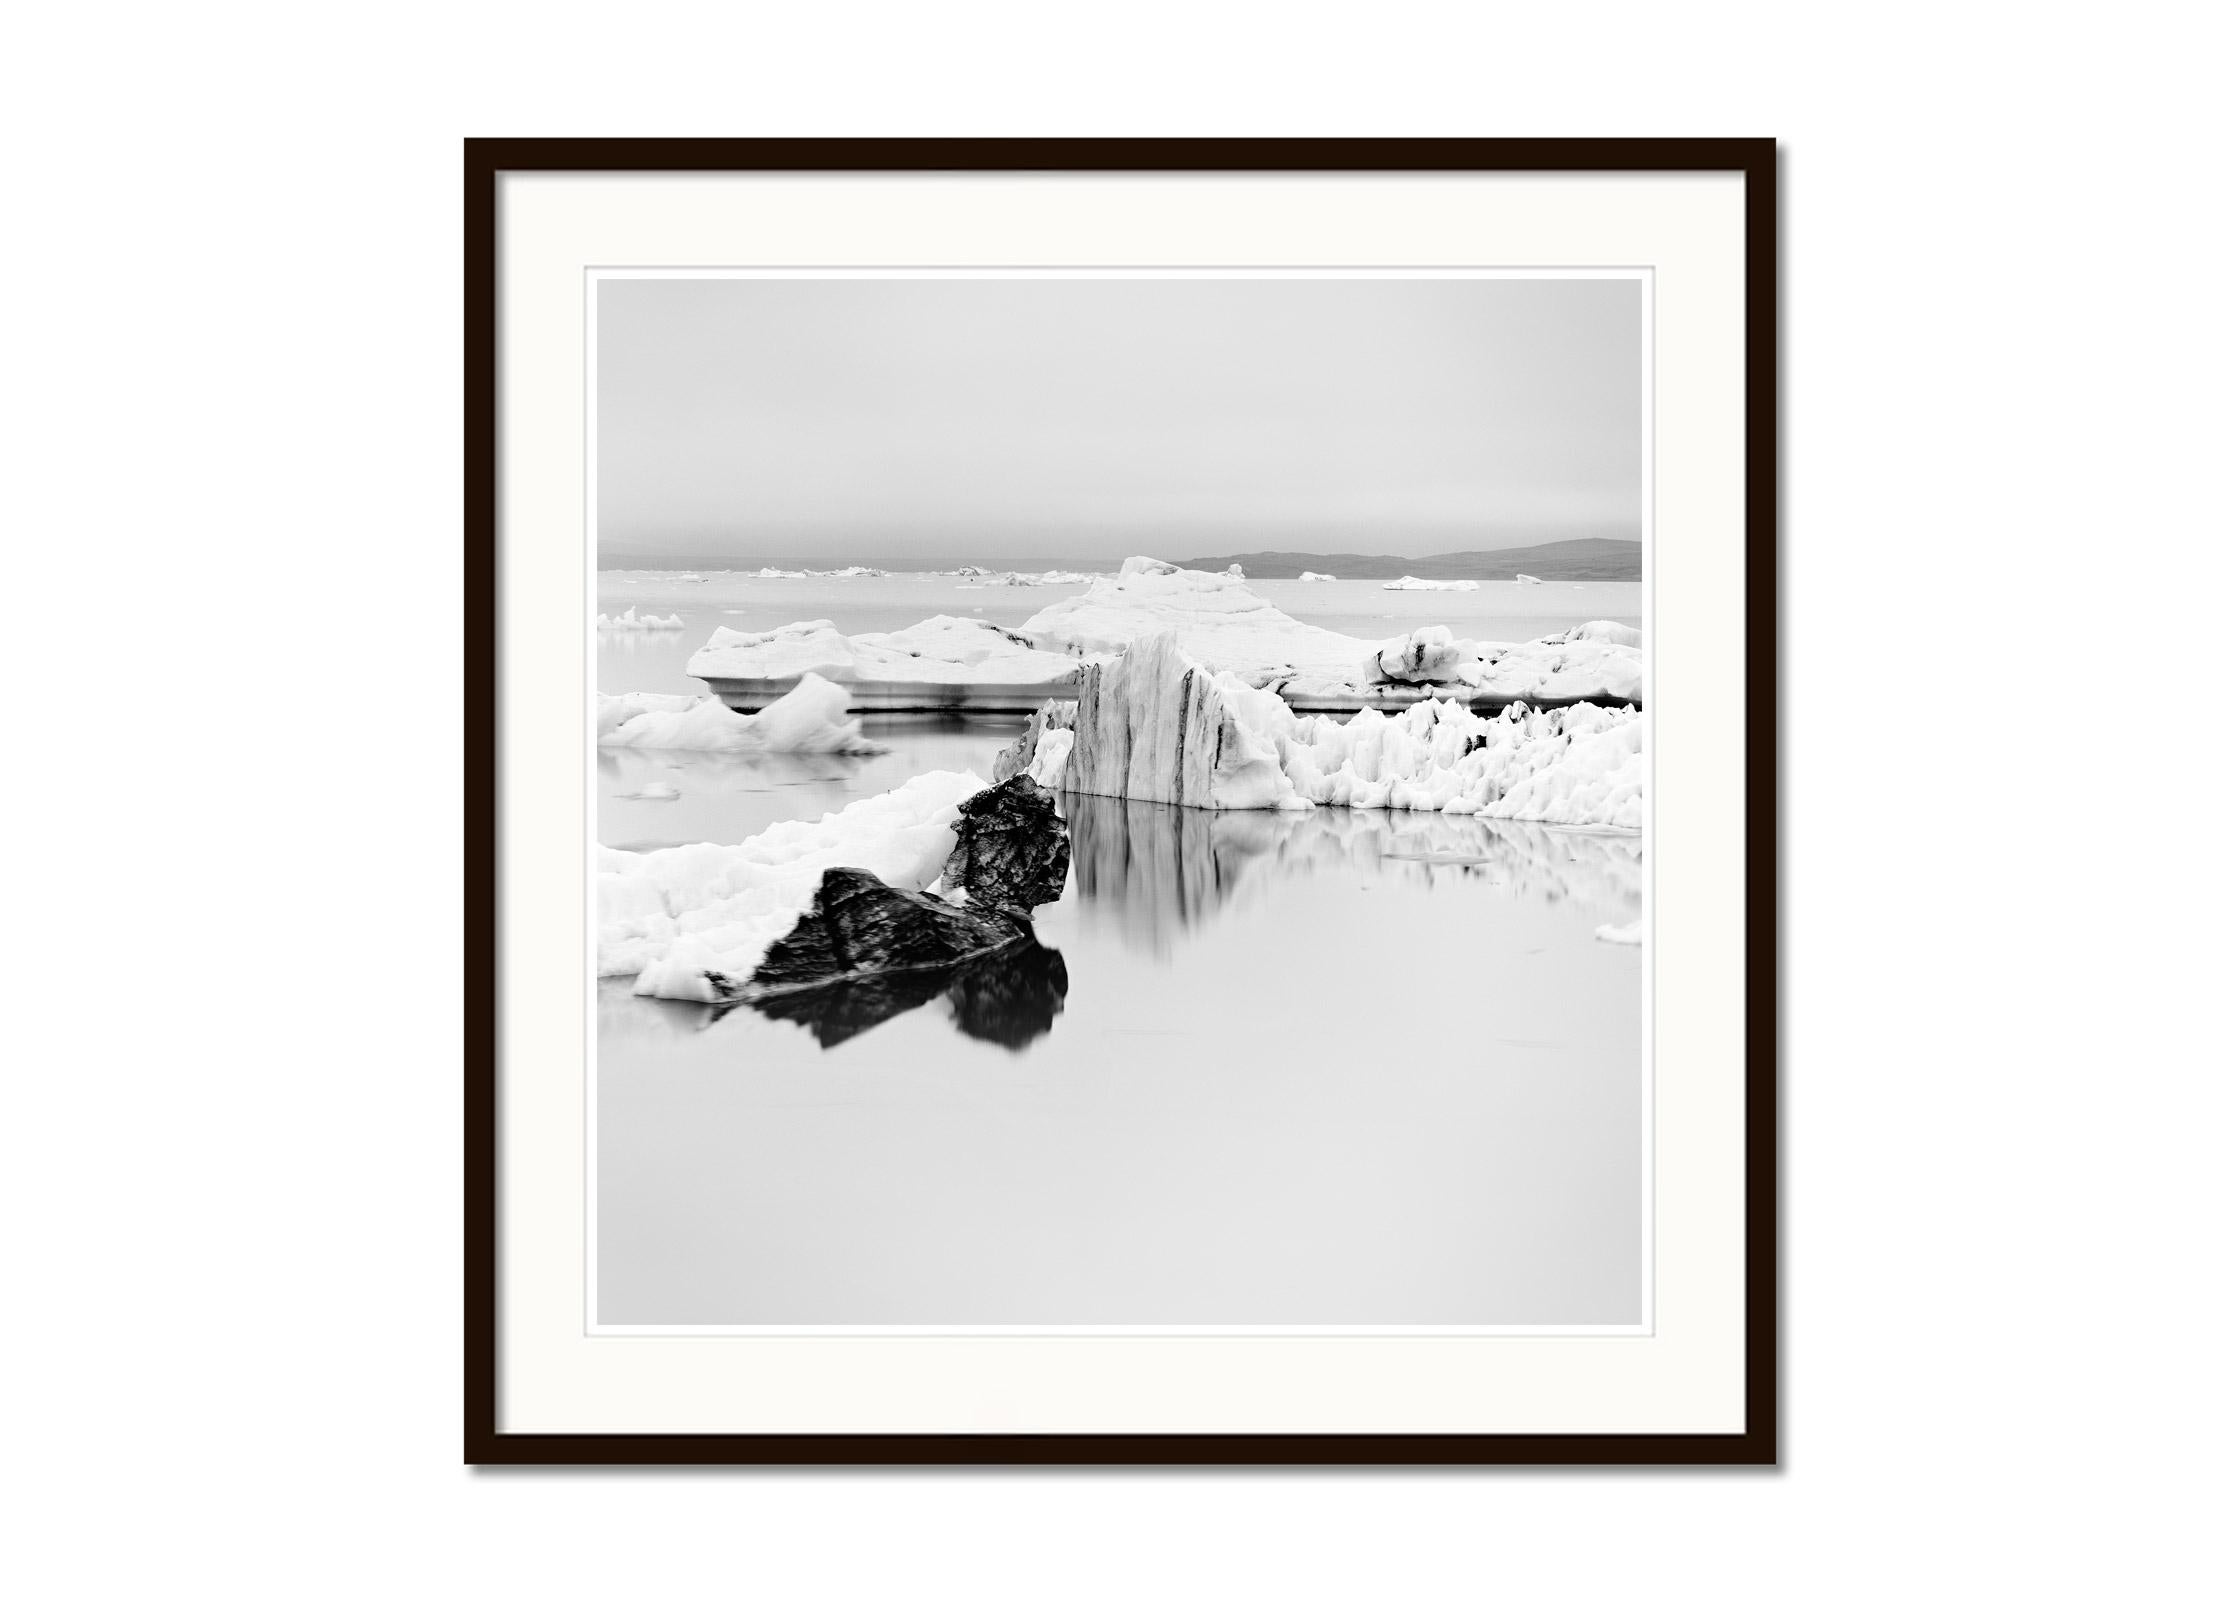 Schwarz-Weiß-Fotografie mit Langzeitbelichtung für Wasserlandschaften - Landschaftsfotografie. Pigmenttintendruck in einer limitierten Auflage von 9 Exemplaren. Alle Drucke von Gerald Berghammer werden auf Bestellung in limitierter Auflage auf